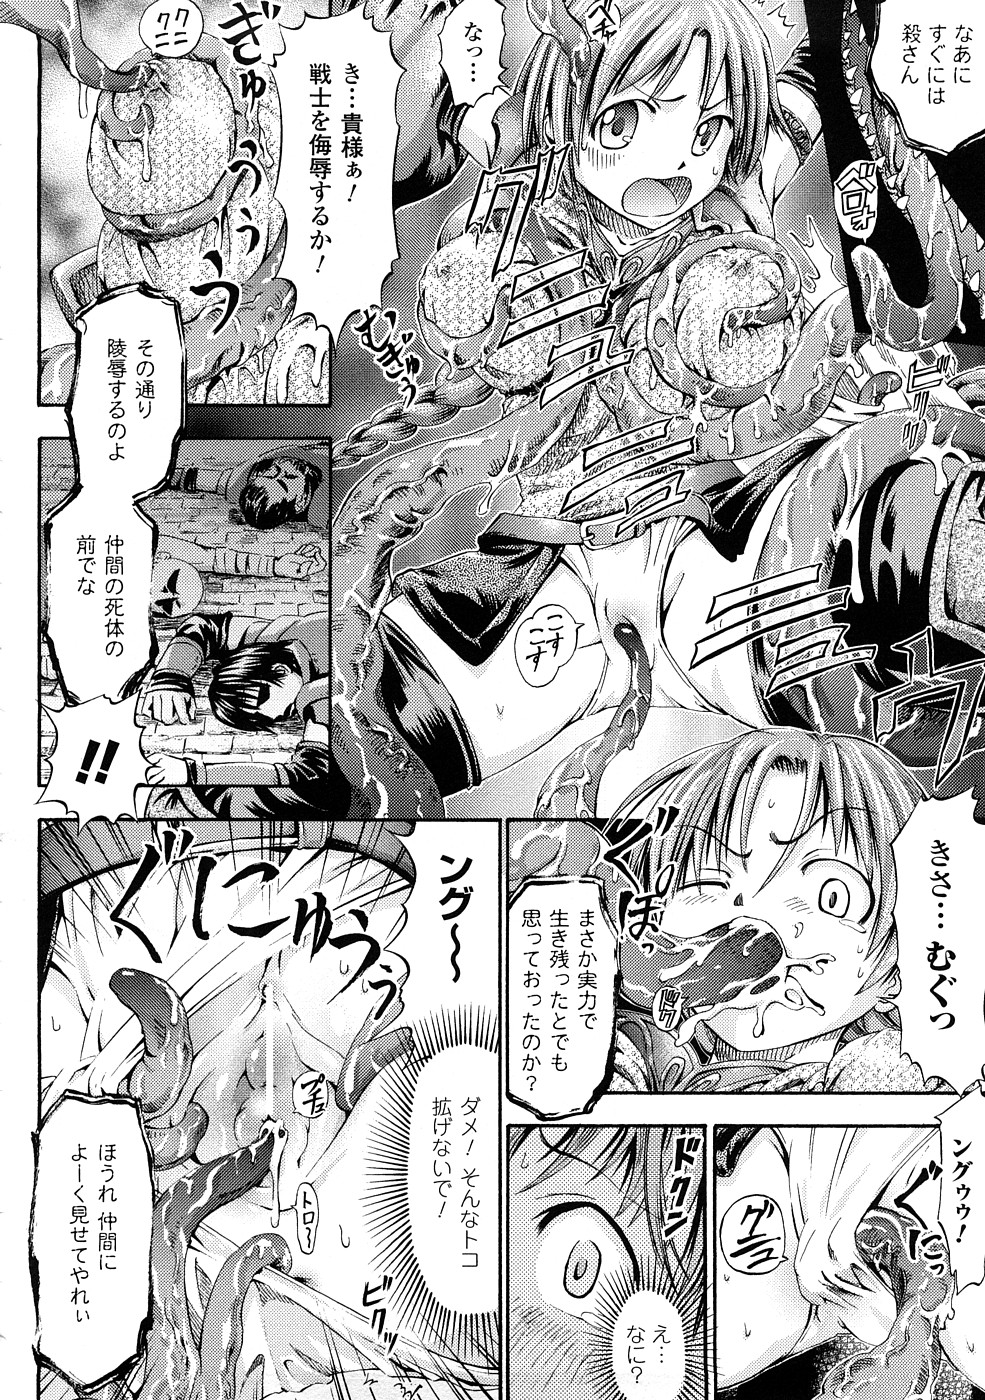 [Horitomo] Fairy Tales page 49 full